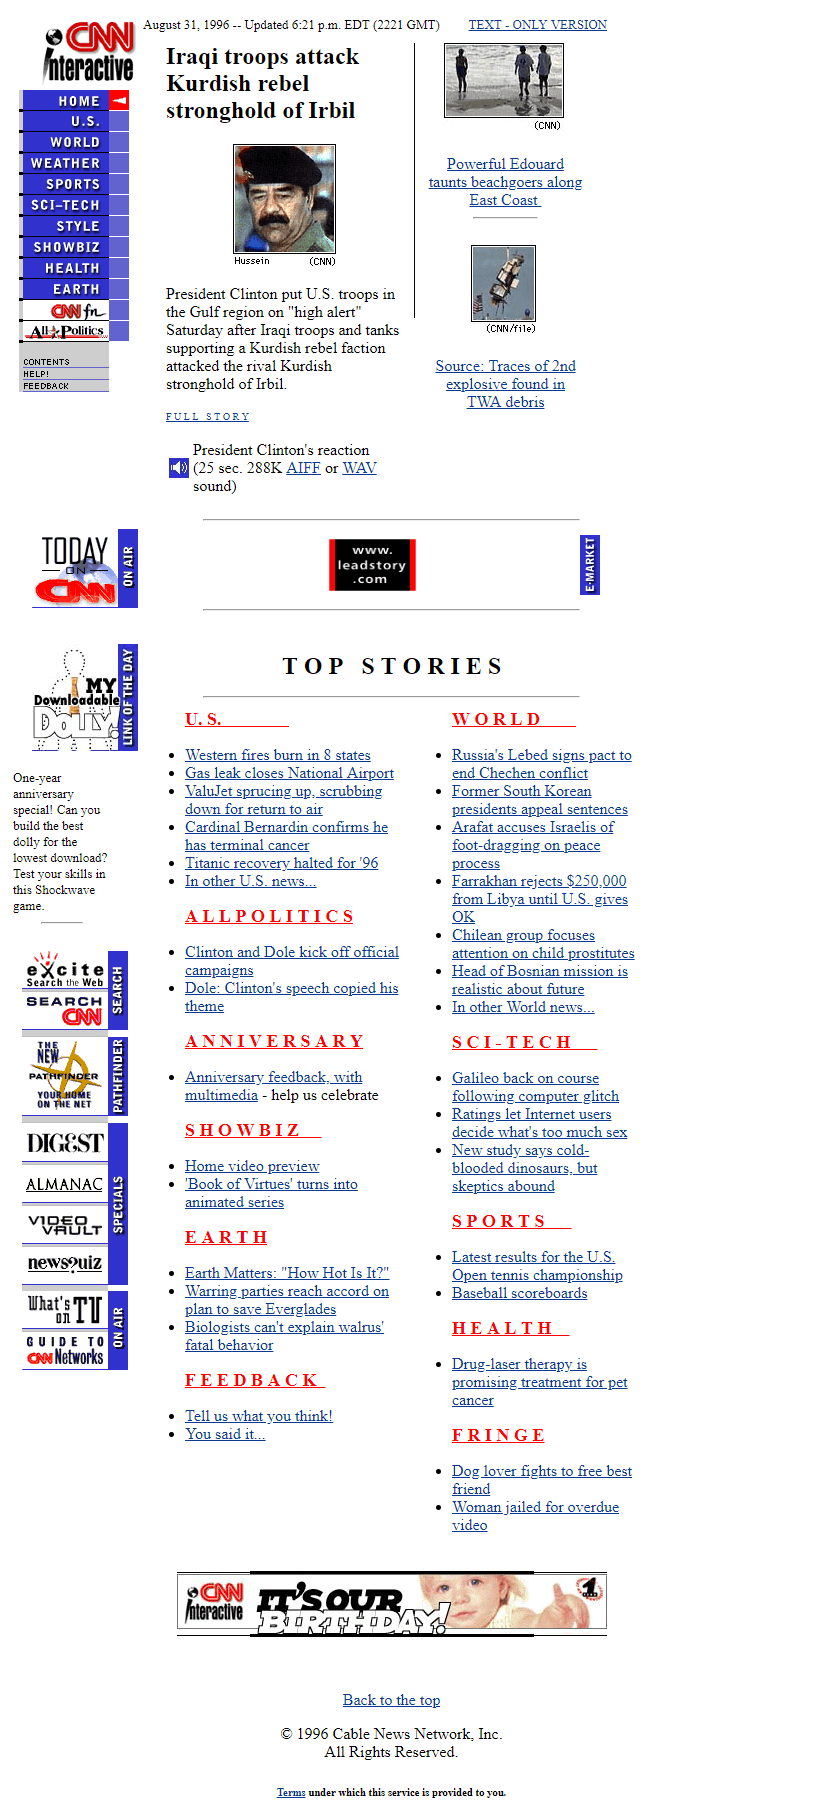 CNN.com in 1996